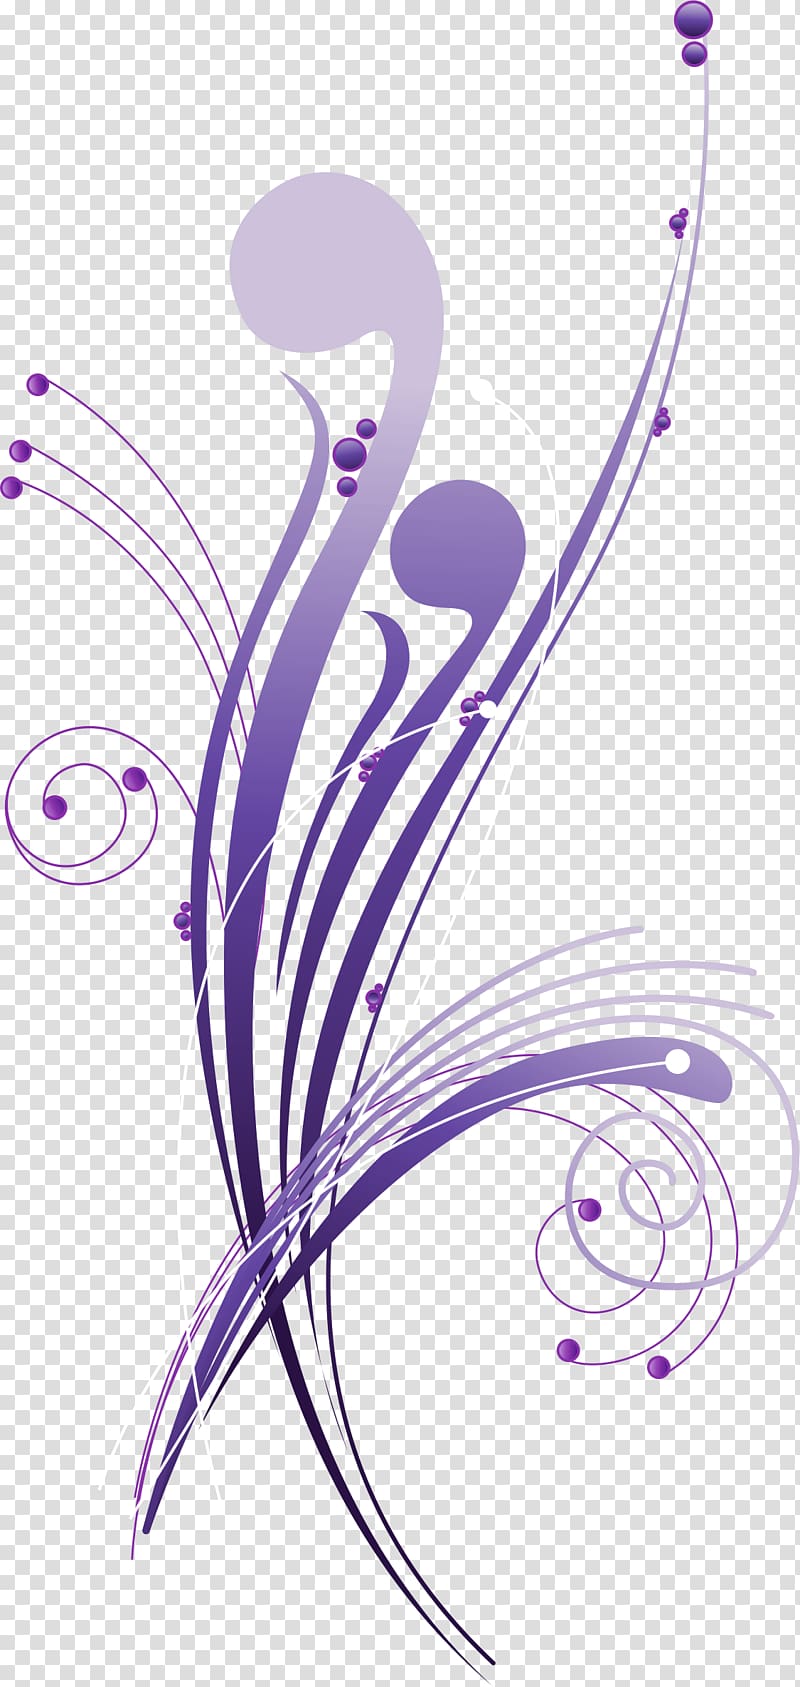 Purple Computer file, Purple line pattern transparent background PNG clipart